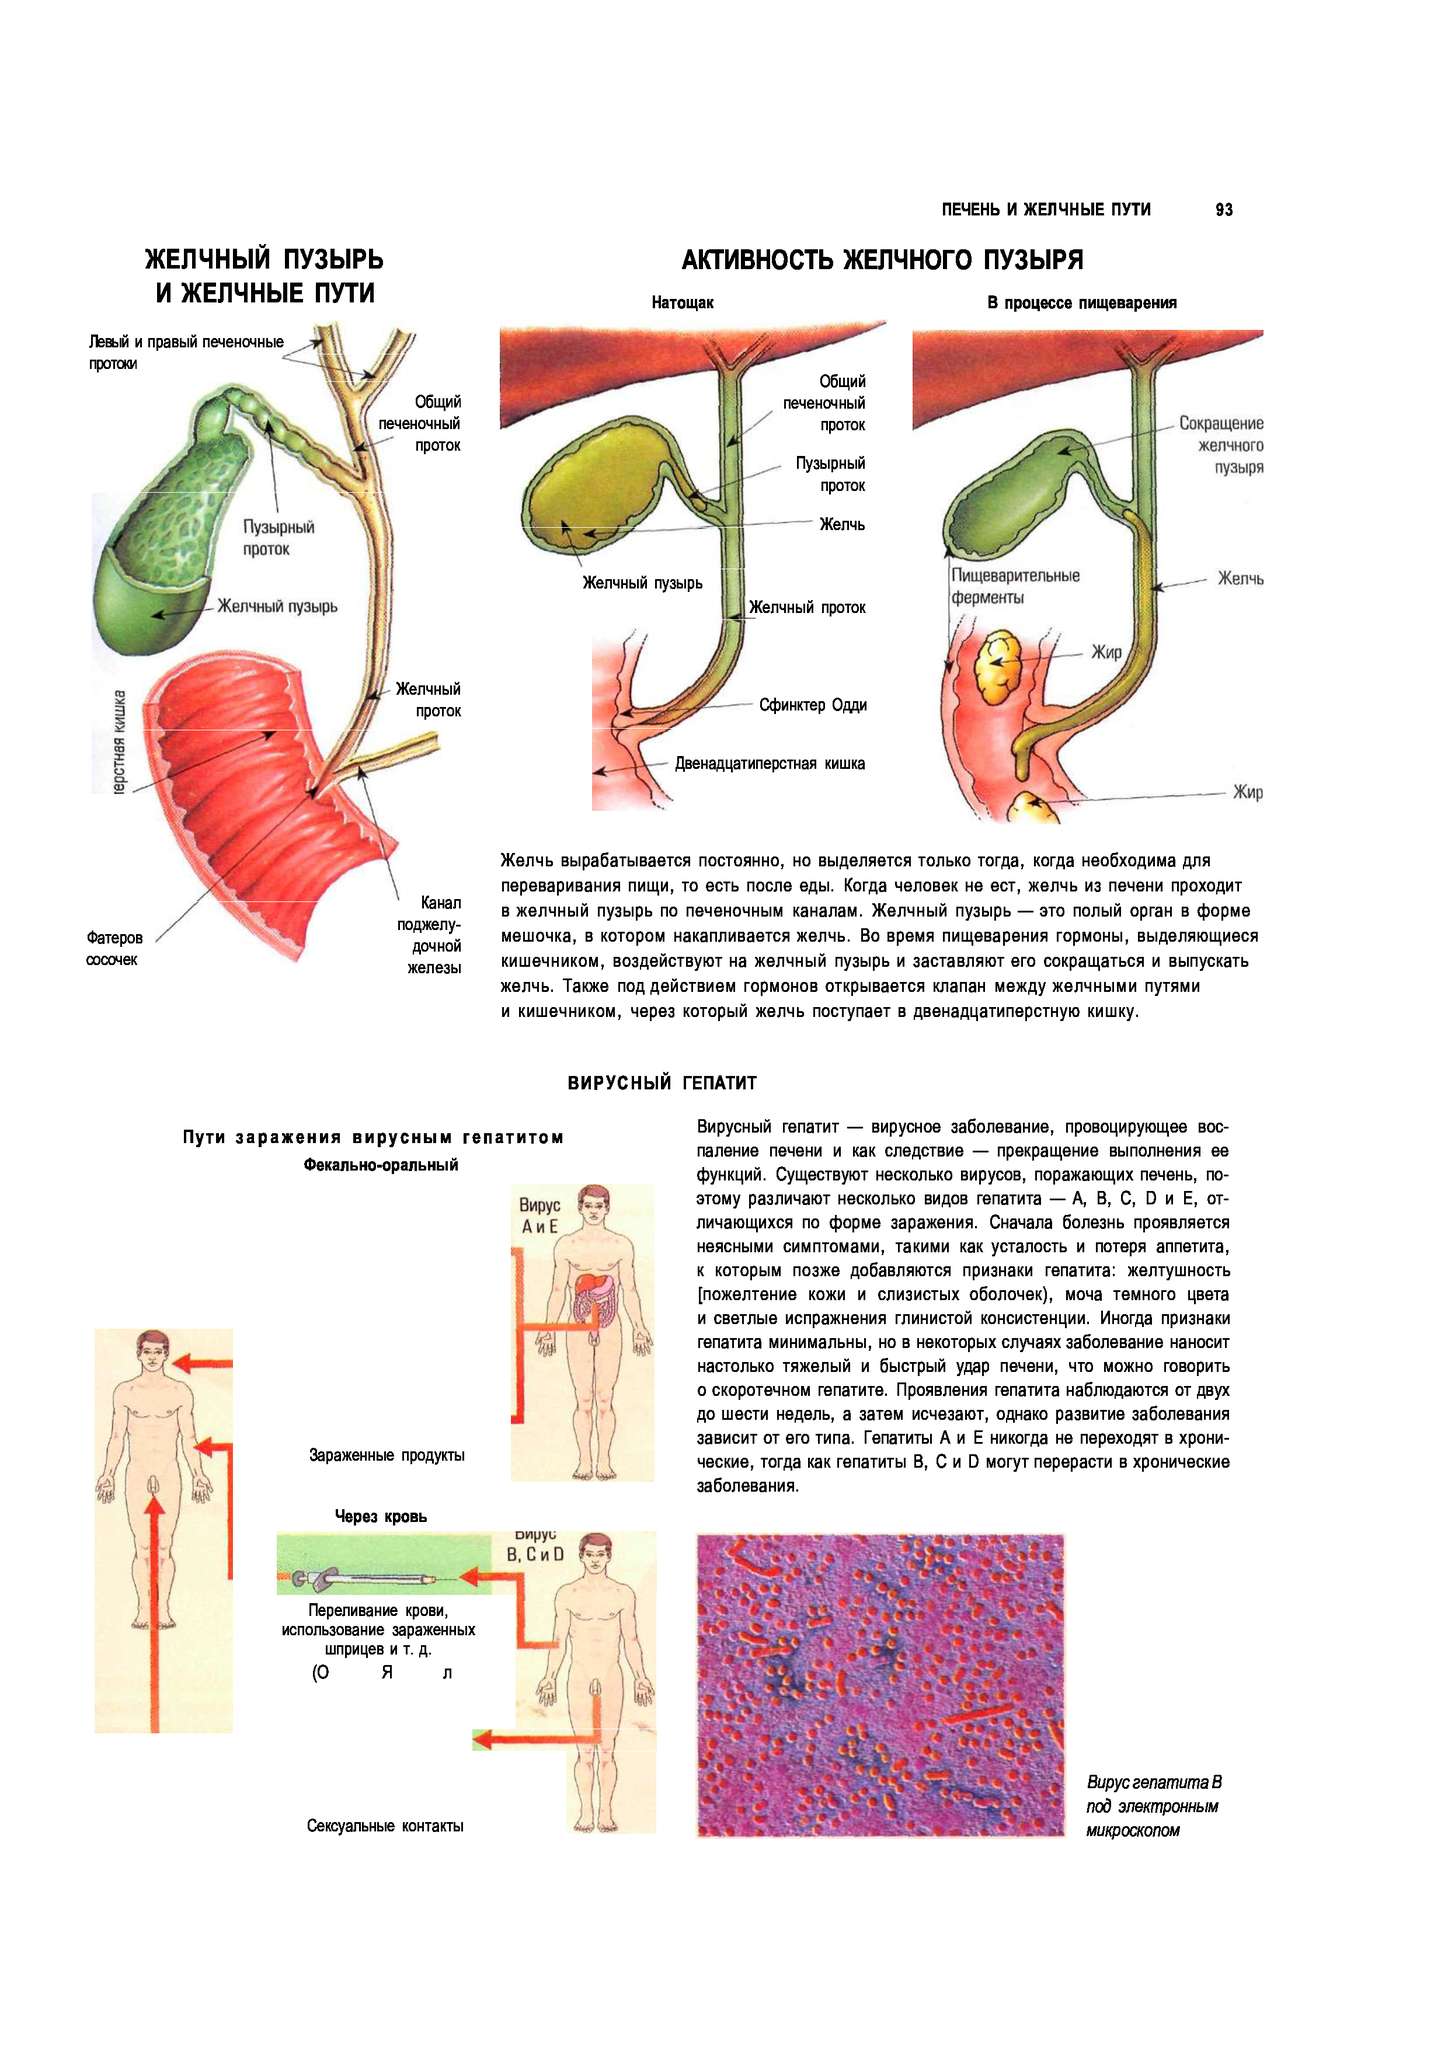 Уменьшенный желчный пузырь. Пищеварительная система желчный пузырь анатомия. Схема оттока желчи. Желчный пузырь и желчные протоки анатомия. Желчный проток и Фатеров сосочек.